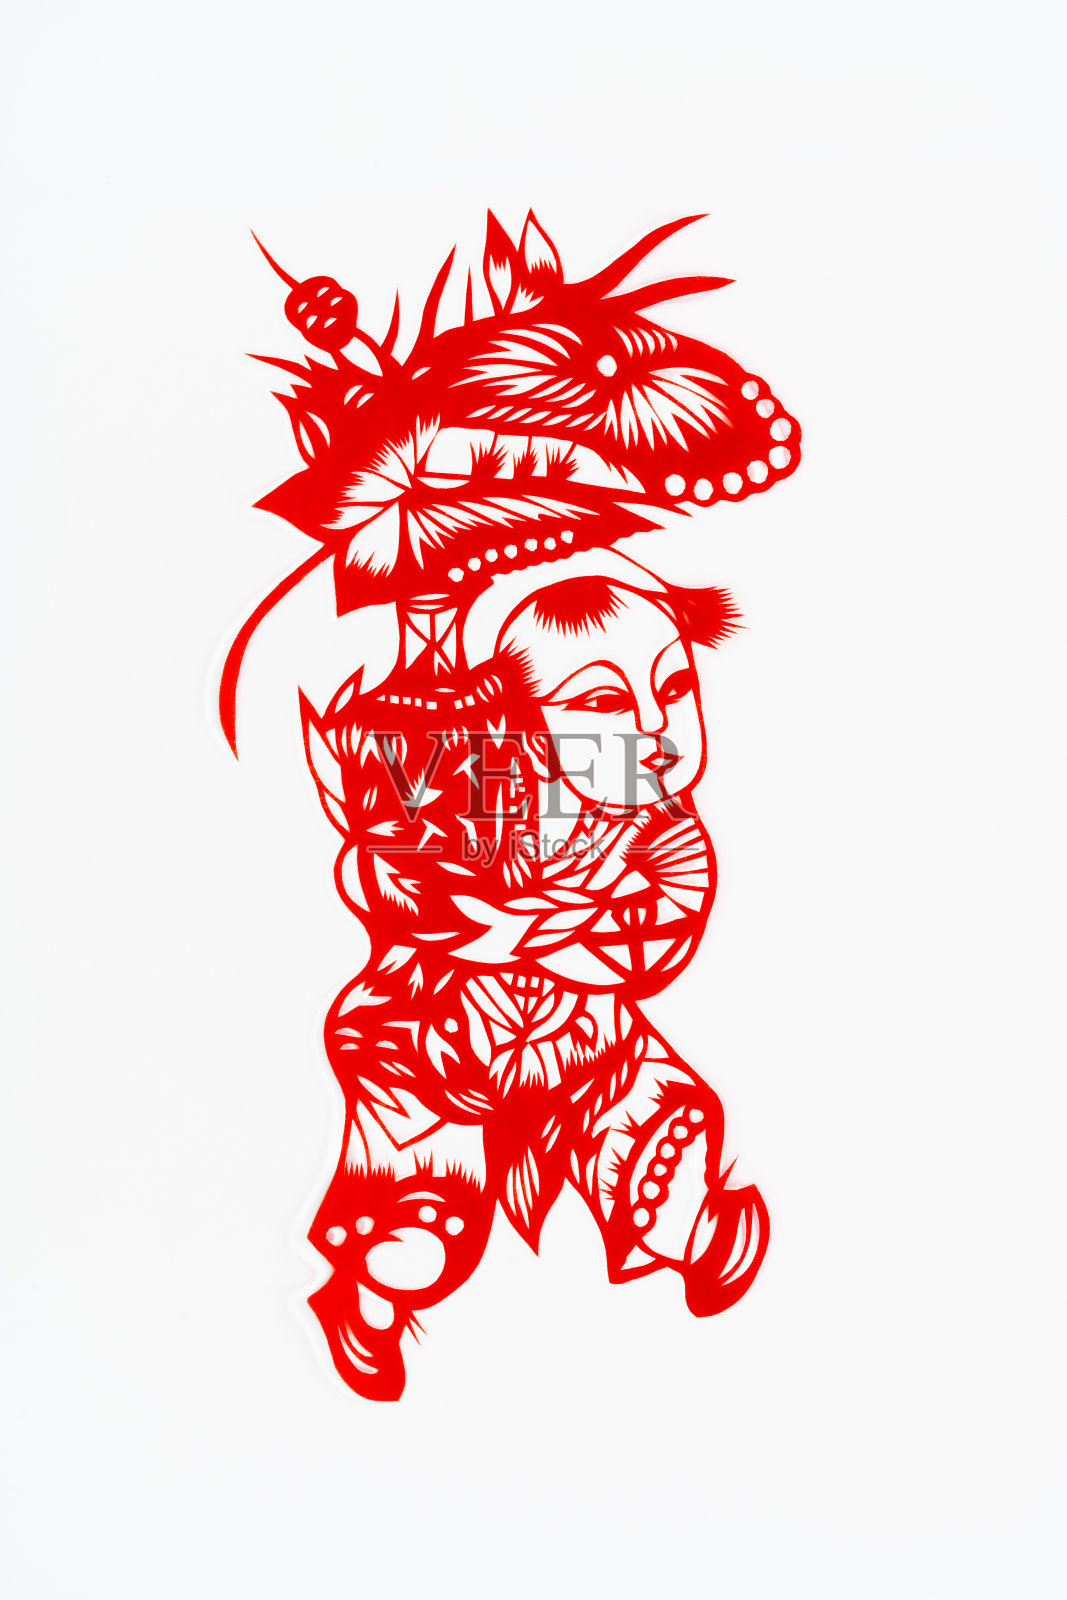 中国传统剪纸艺术图案、花窗。农历新年。象征着幸福和好运。中国吉祥元素。汉字翻译(祝福，长寿，和平，财富，丰饶)插画图片素材